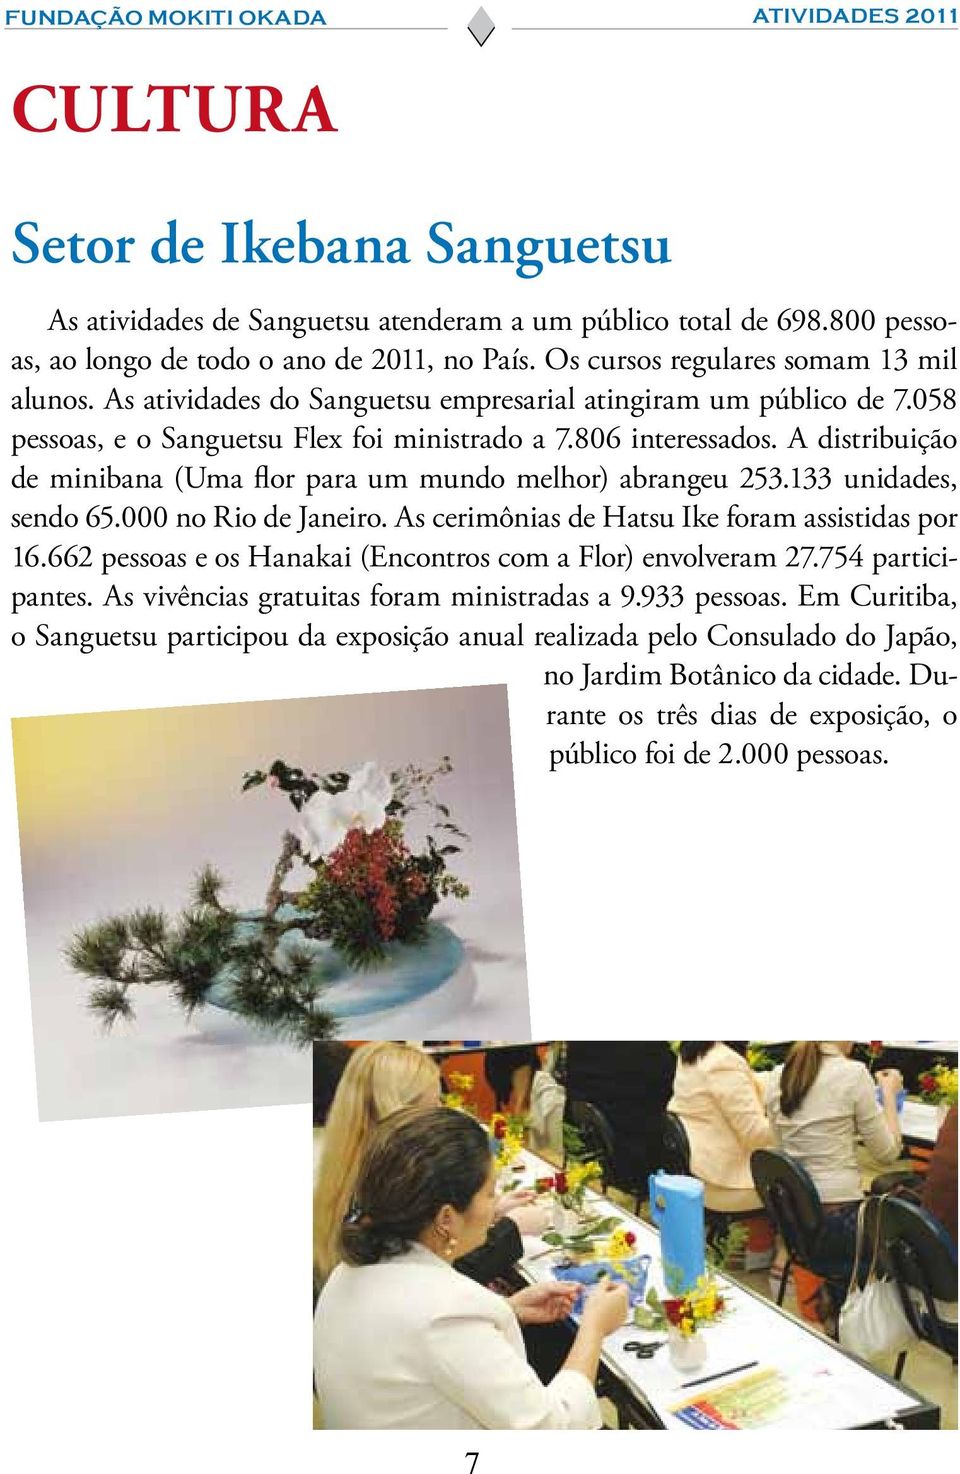 A distribuição de minibana (Uma flor para um mundo melhor) abrangeu 253.133 unidades, sendo 65.000 no Rio de Janeiro. As cerimônias de Hatsu Ike foram assistidas por 16.